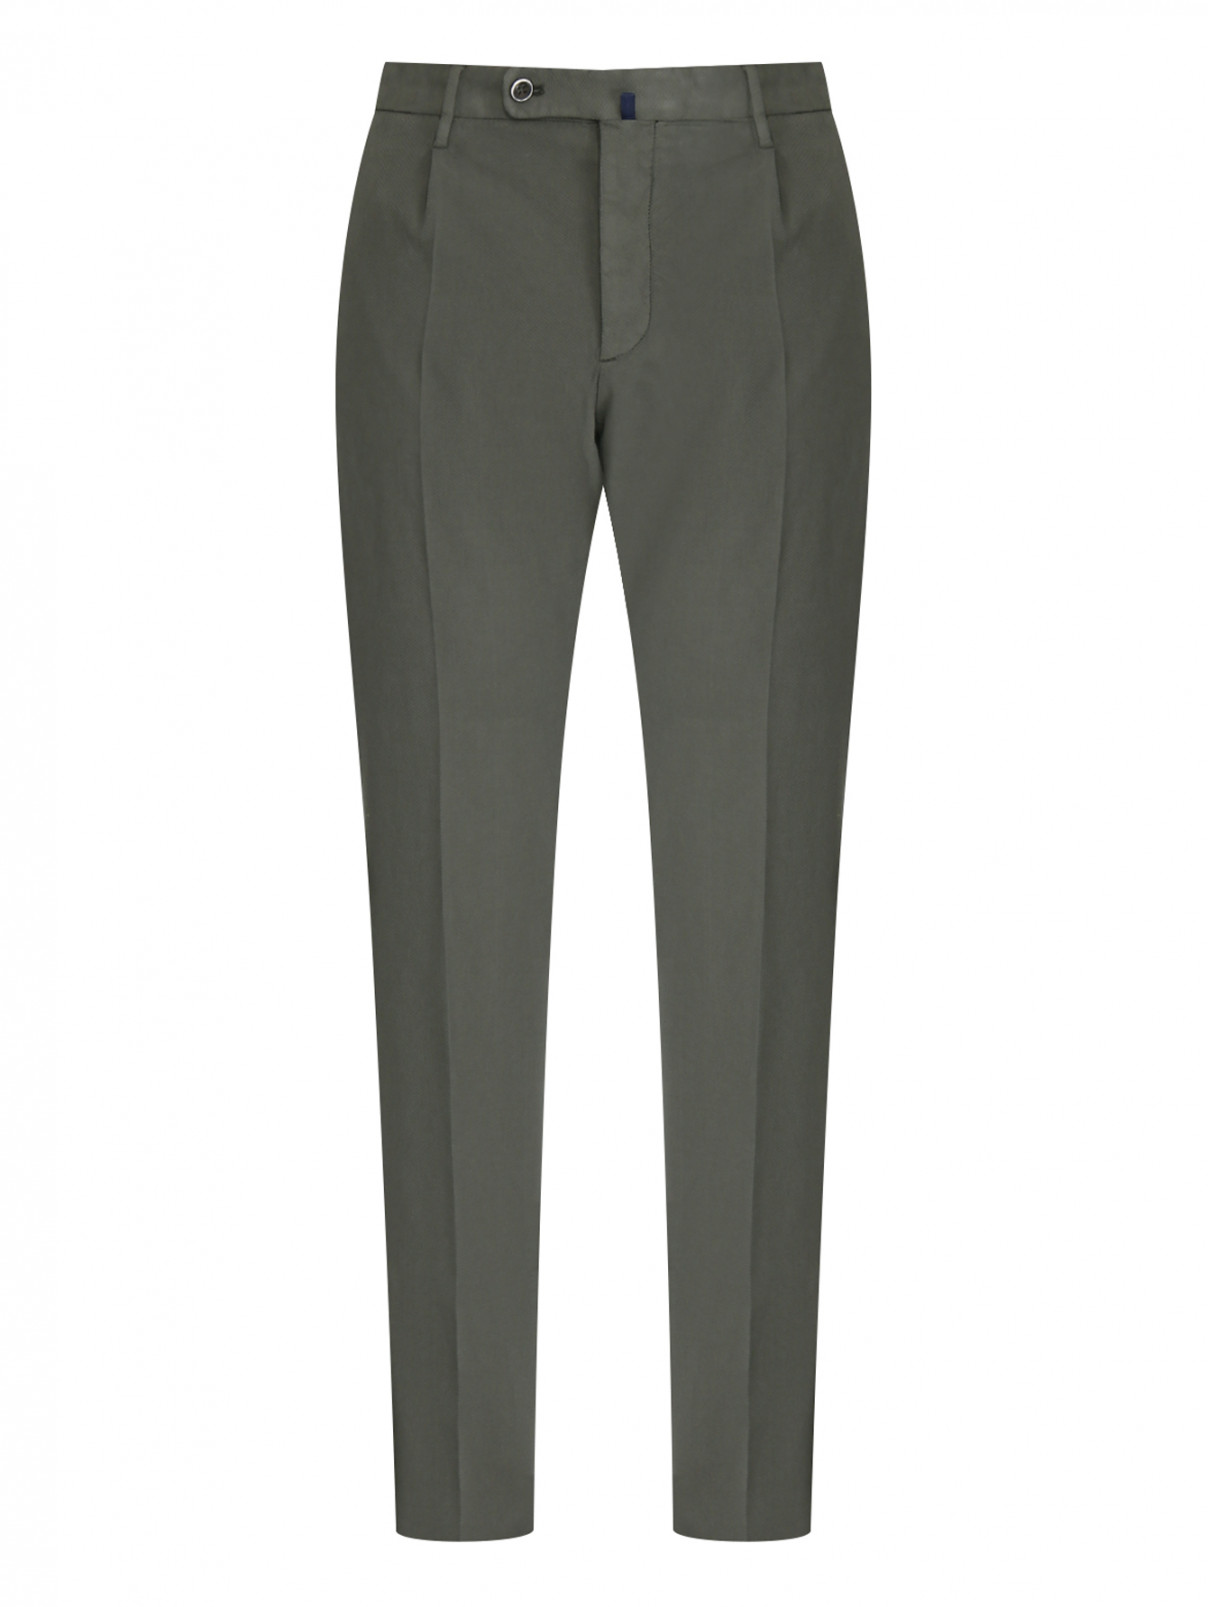 Однотонные брюки из рельефной ткани Incotex  –  Общий вид  – Цвет:  Зеленый